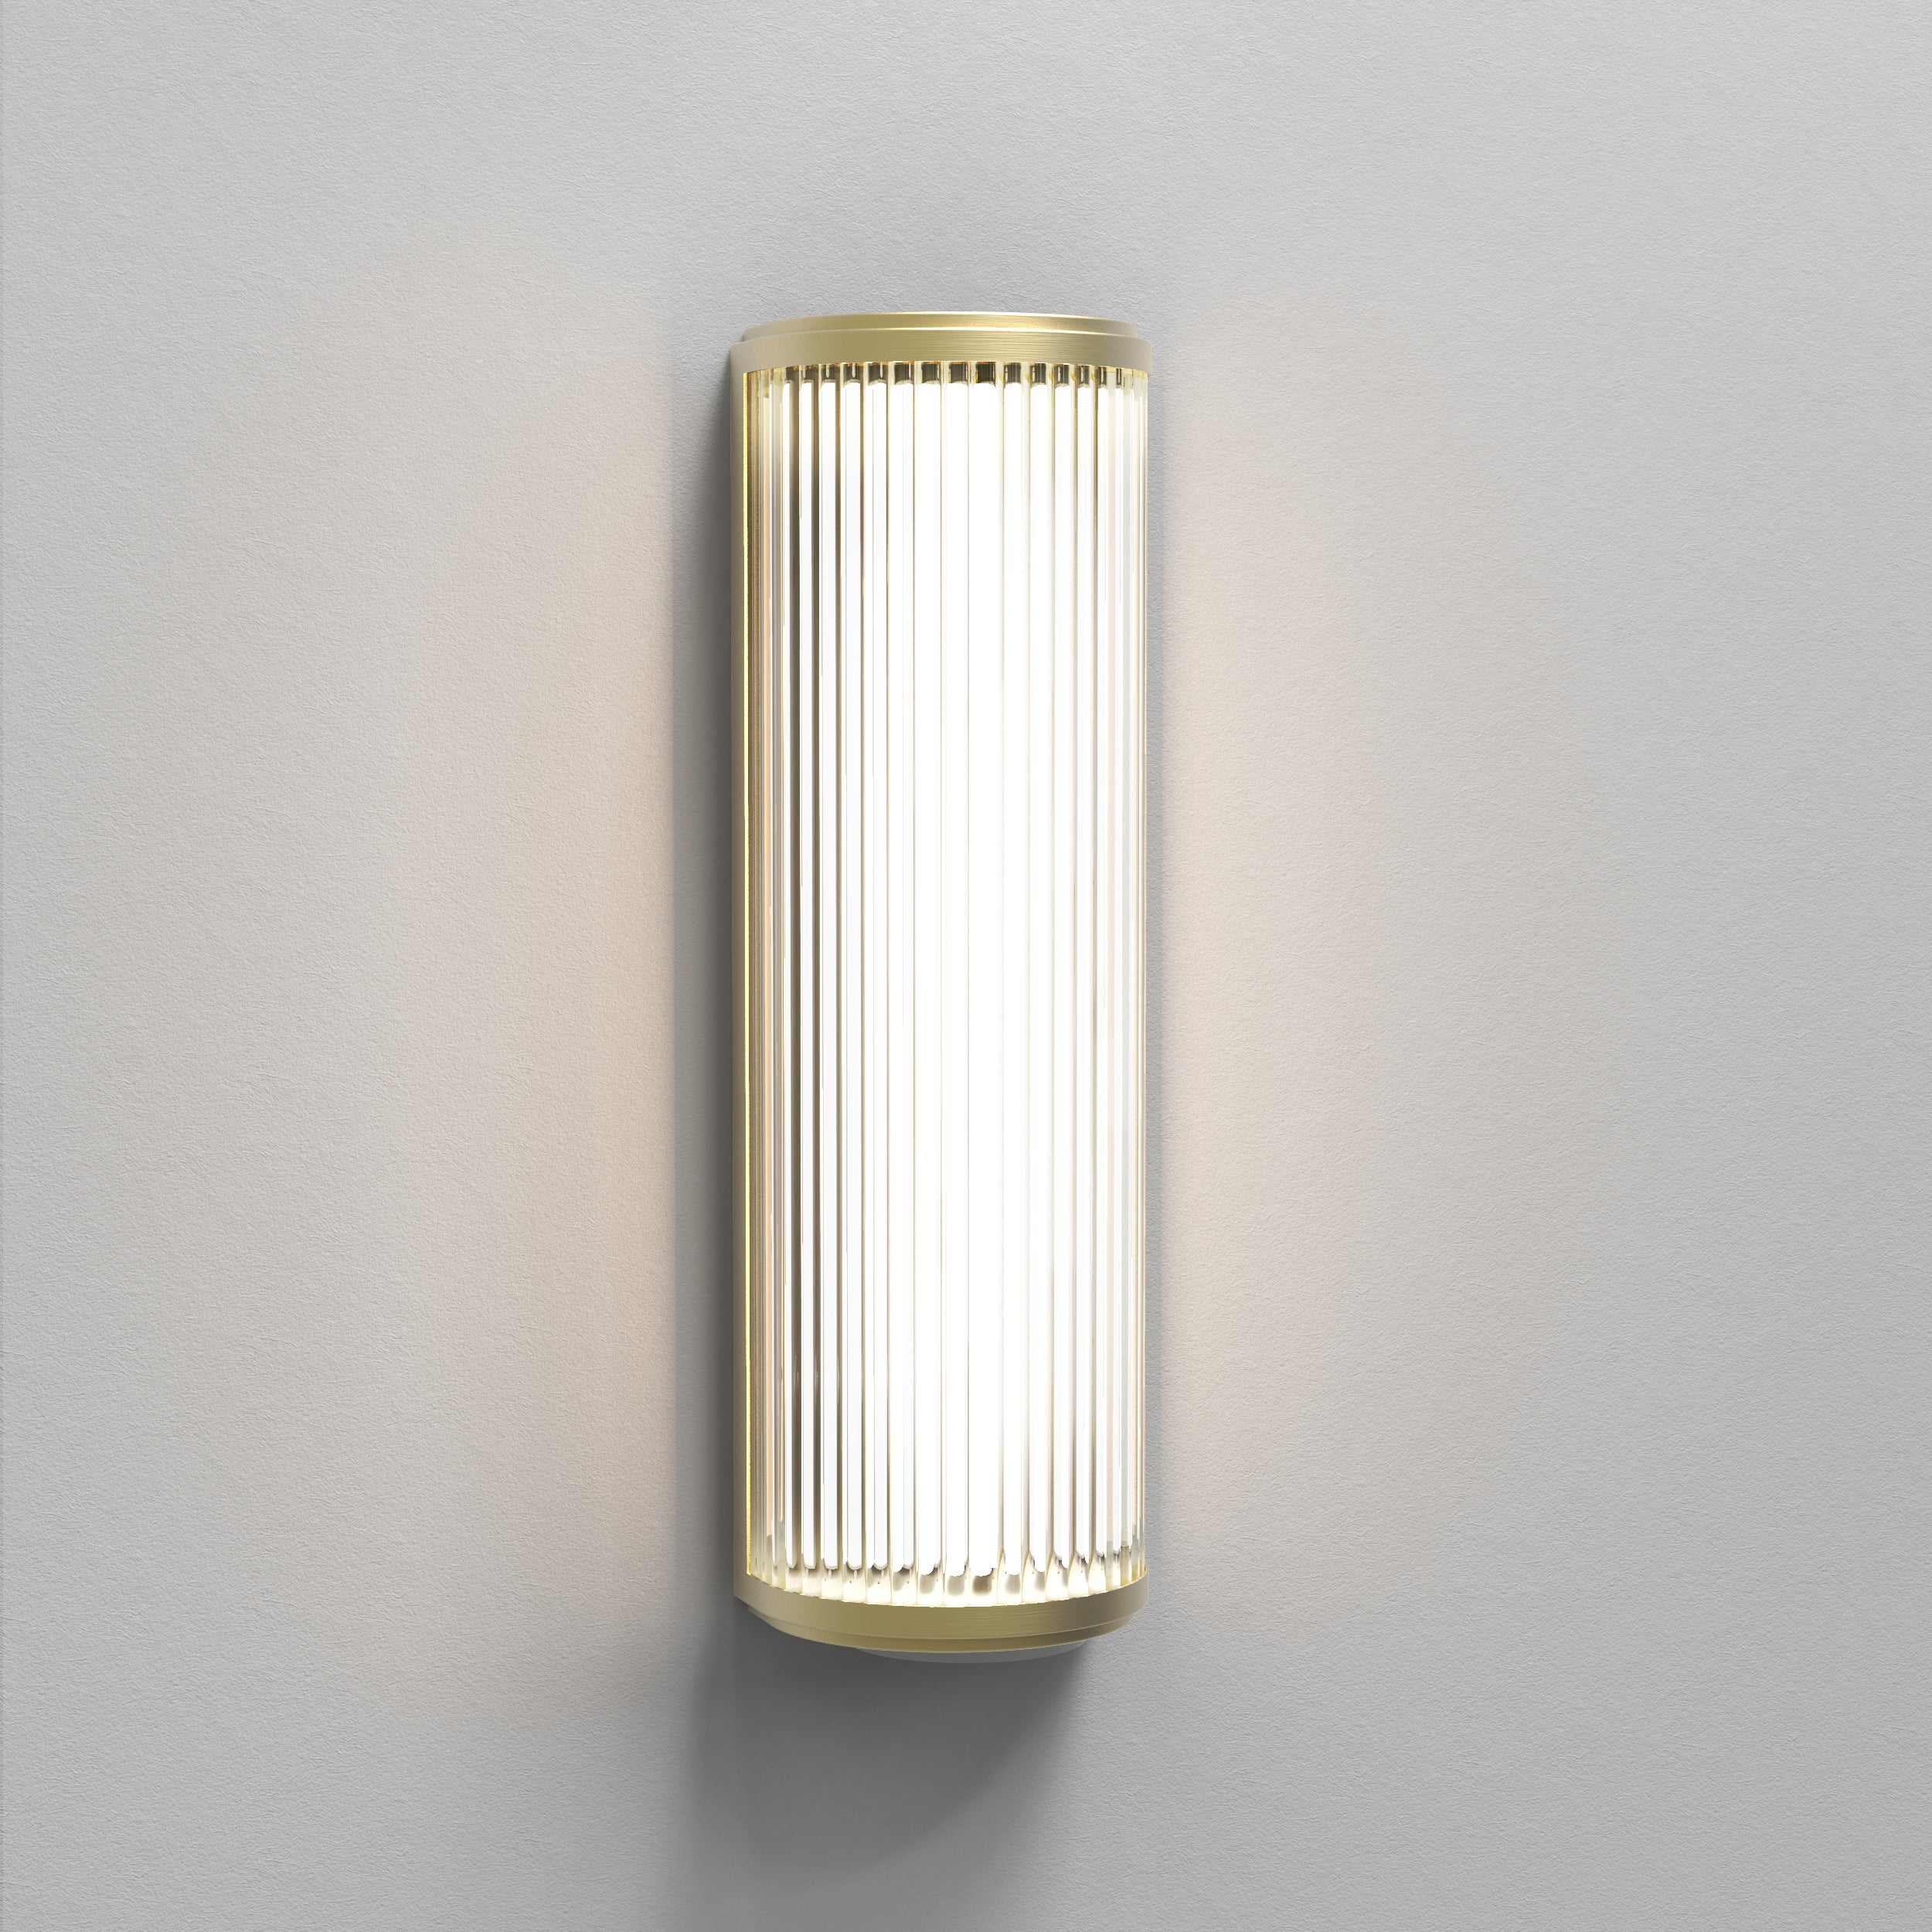 Aflang væglampe med top, bund og bagside i guldfarvet stål samt en glaskærm med linjer.